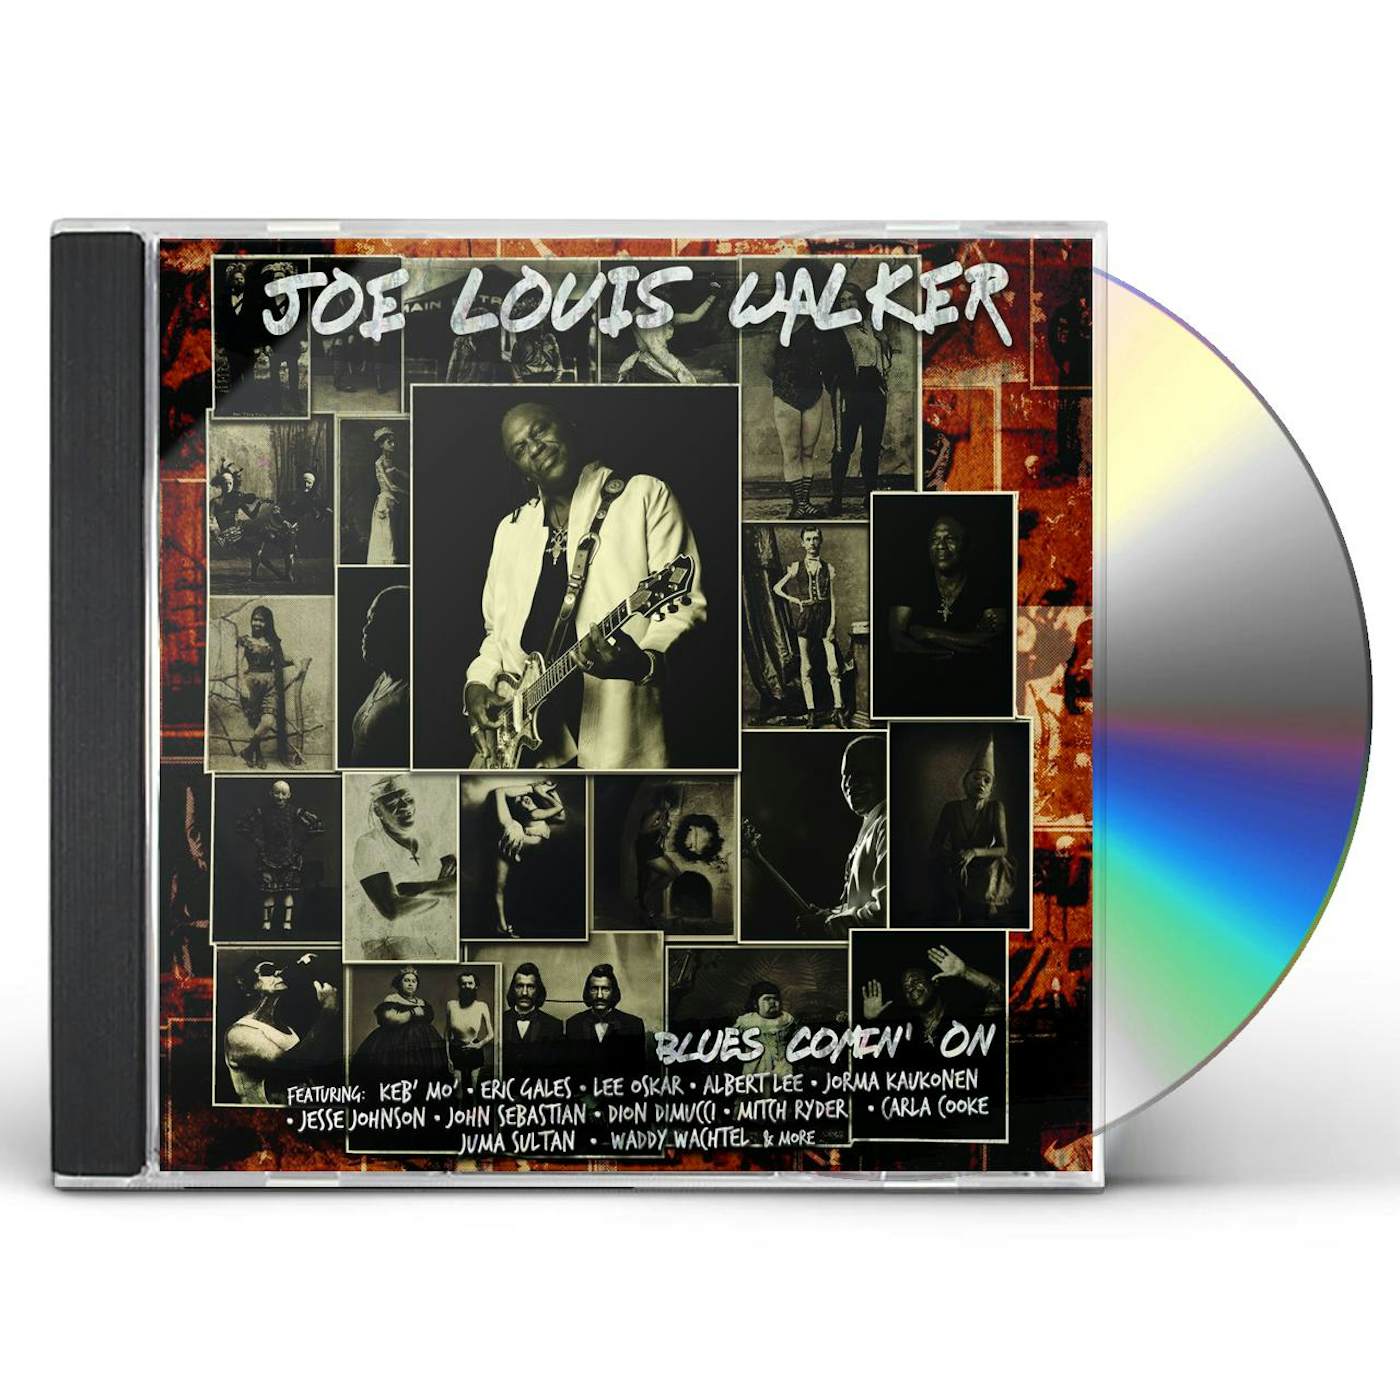 Joe Louis Walker BLUES COMIN' ON CD